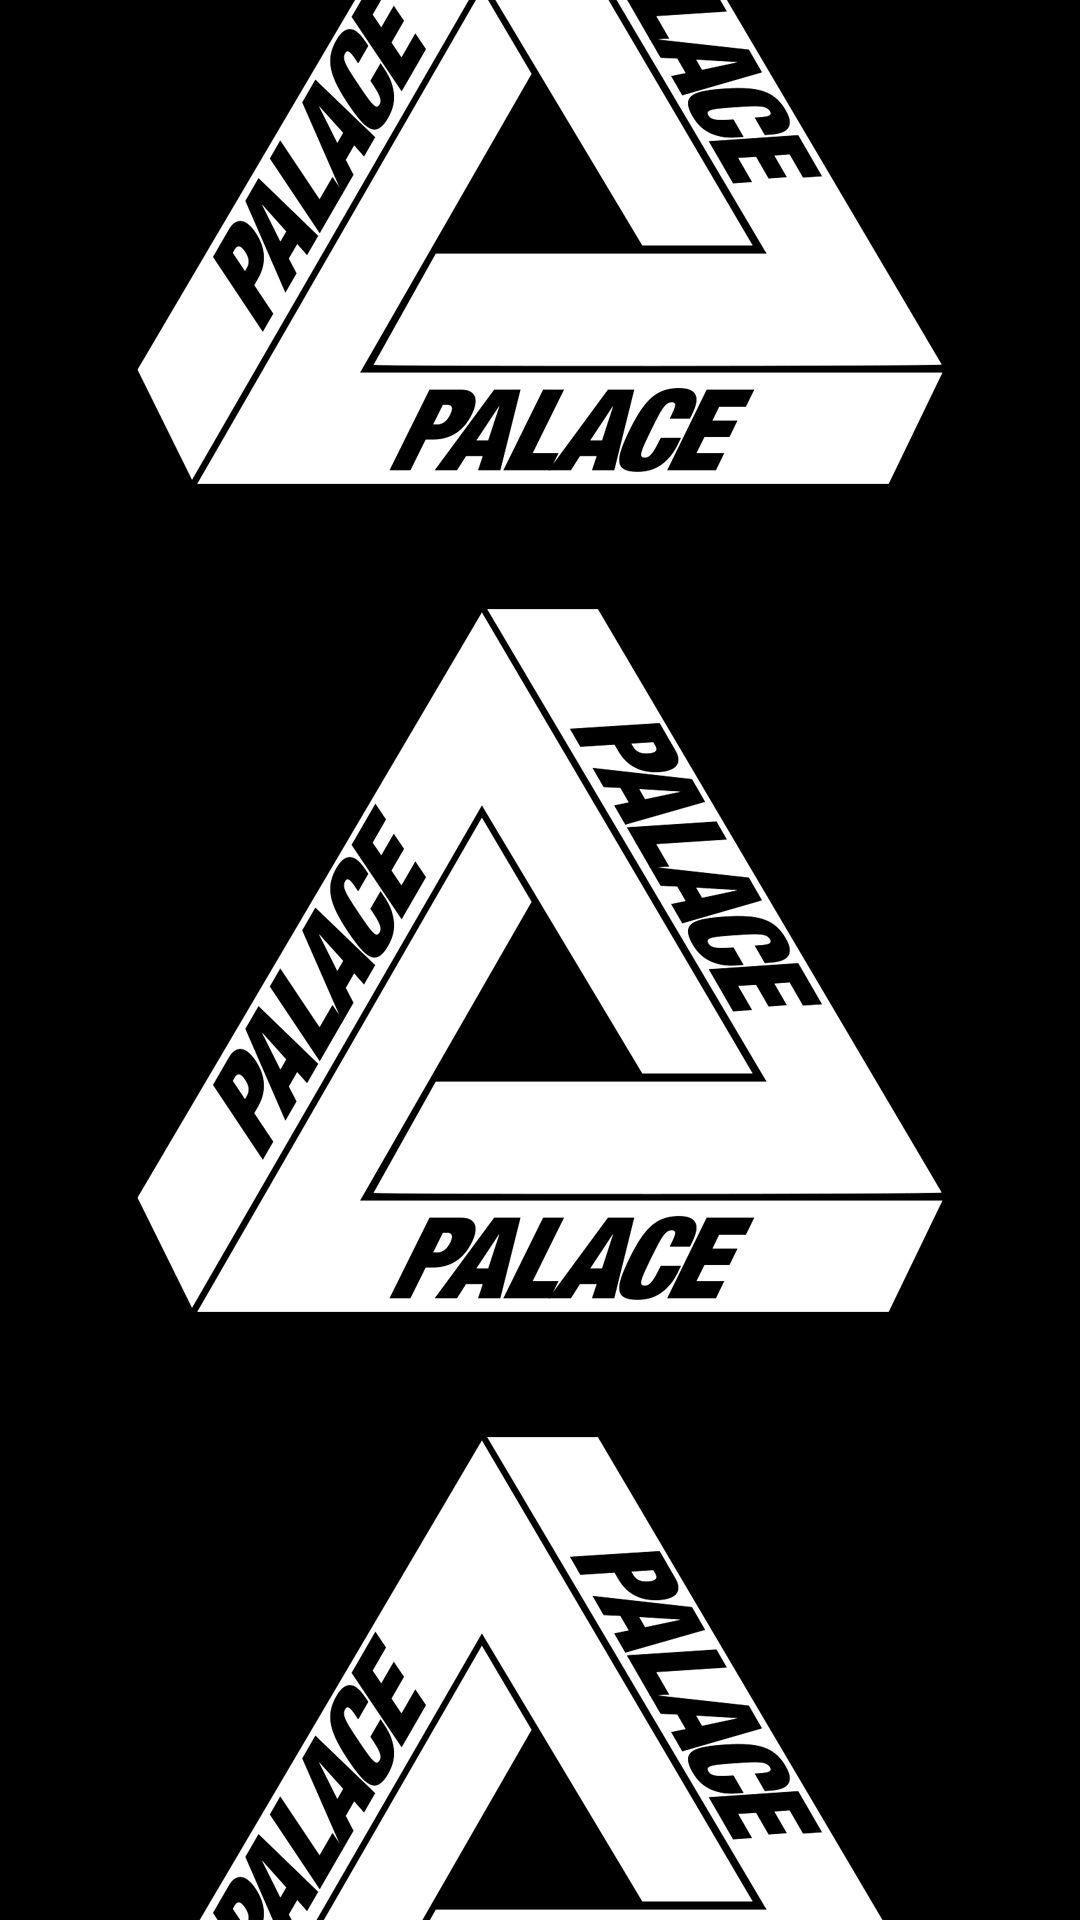 Palace Clothing Logo - Palace Skateboards [M]